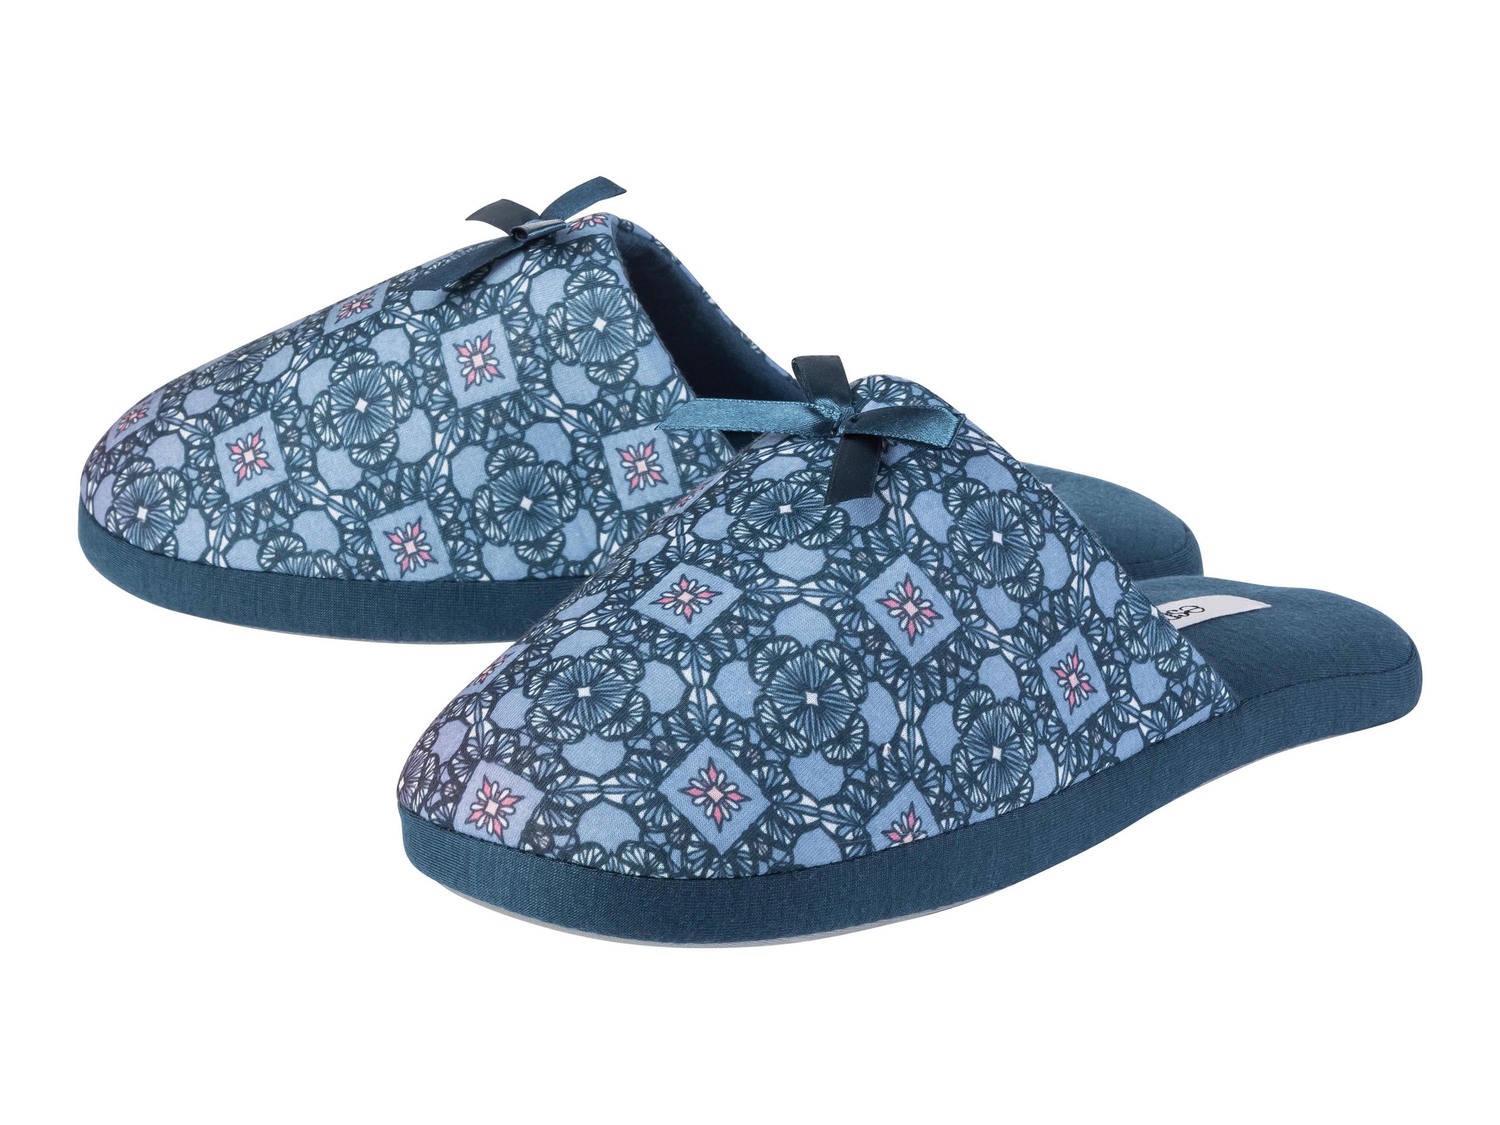 Pantofole da donna Esmara, prezzo 4.99 &#8364;  
Misure: 36-41